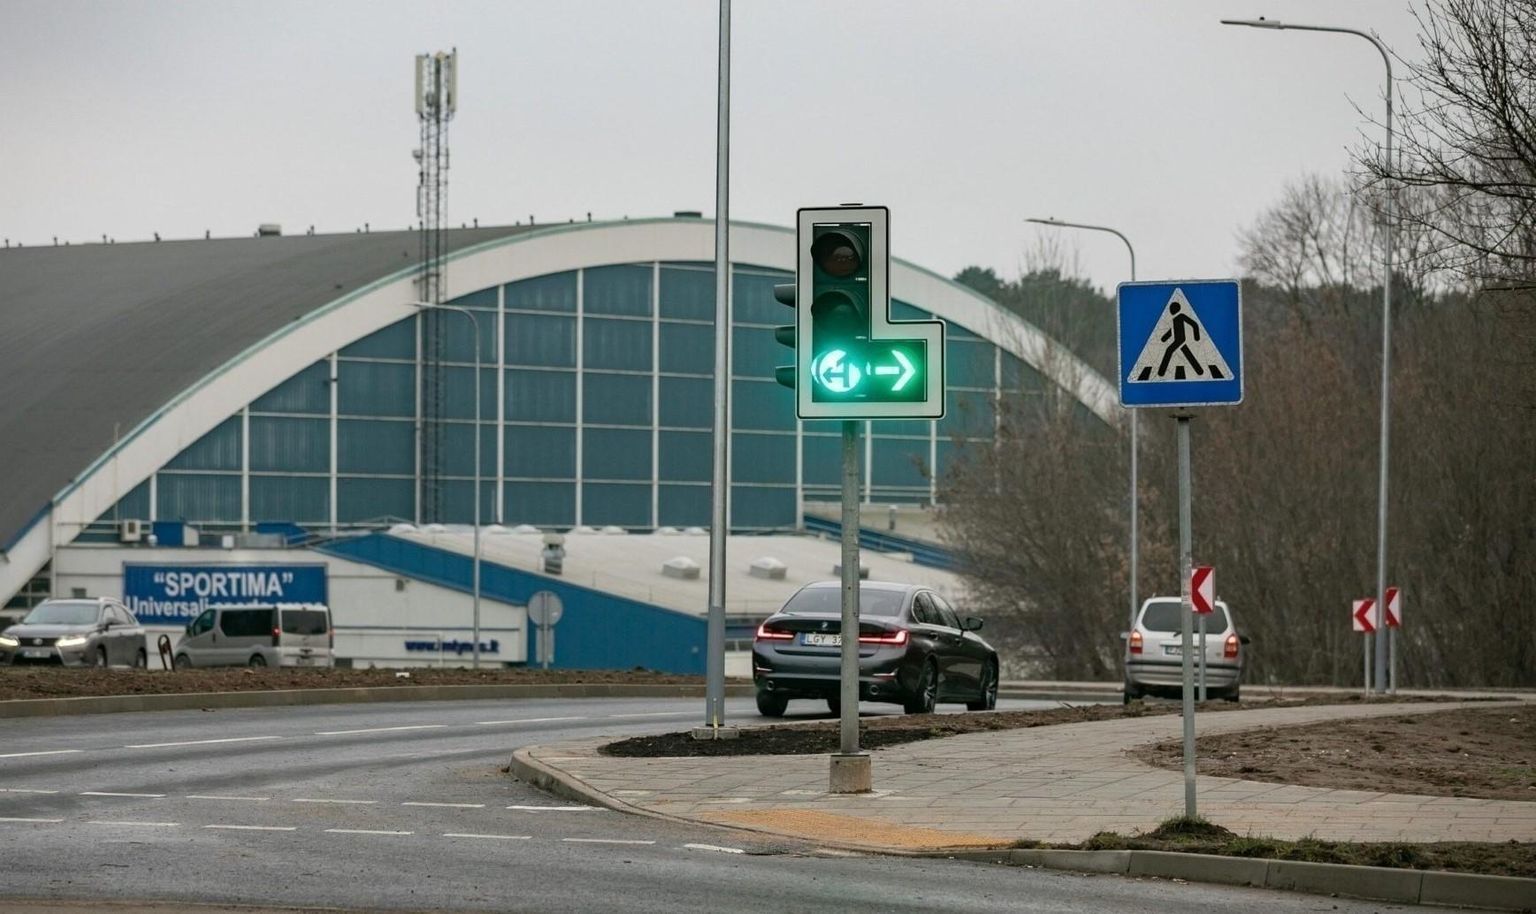 Uut tüüpi valgusfoor Vilniuses: kui põleb roheline tuli ja paremale osutav nool selle kõrval, tohivad autod pöörata, kuid jalakäijad ja jalgratturid peavad ootama. Omaette tähendus on nii üksi põleval rohelisel tule kui ka punase tulega koos põleval noolel.